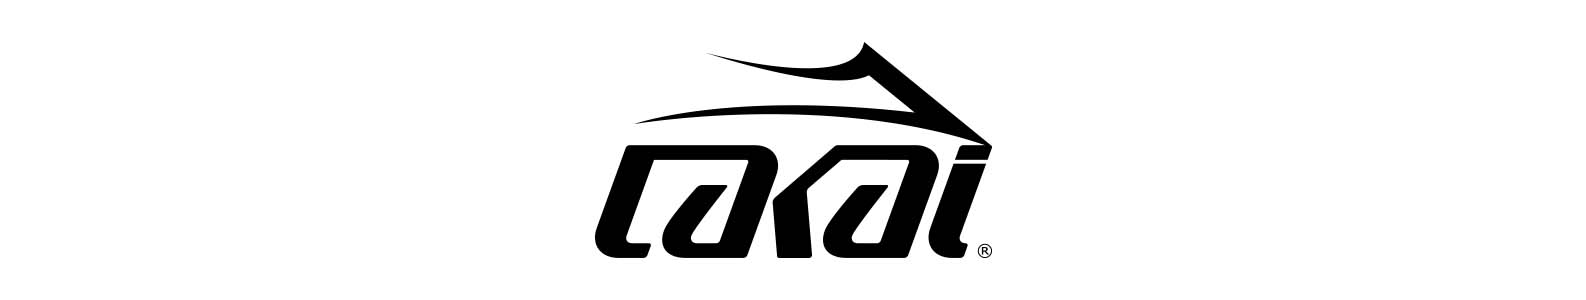 Lakai brand header image